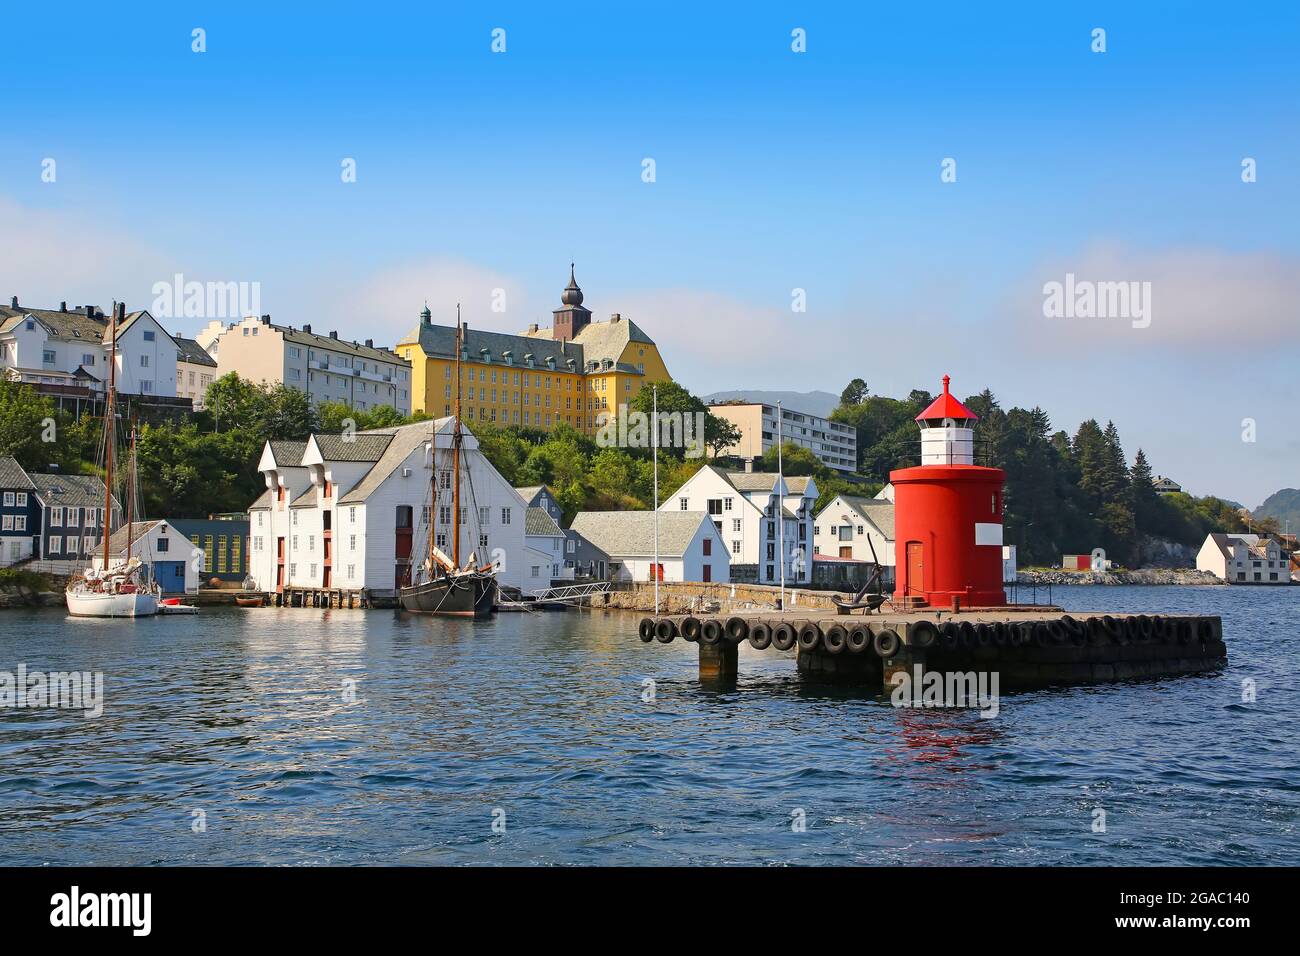 Edifici storici, molo e barche da pesca tradizionali lungo il lungomare del porto. Faro in primo piano della getty, Alesund, Norvegia Foto Stock